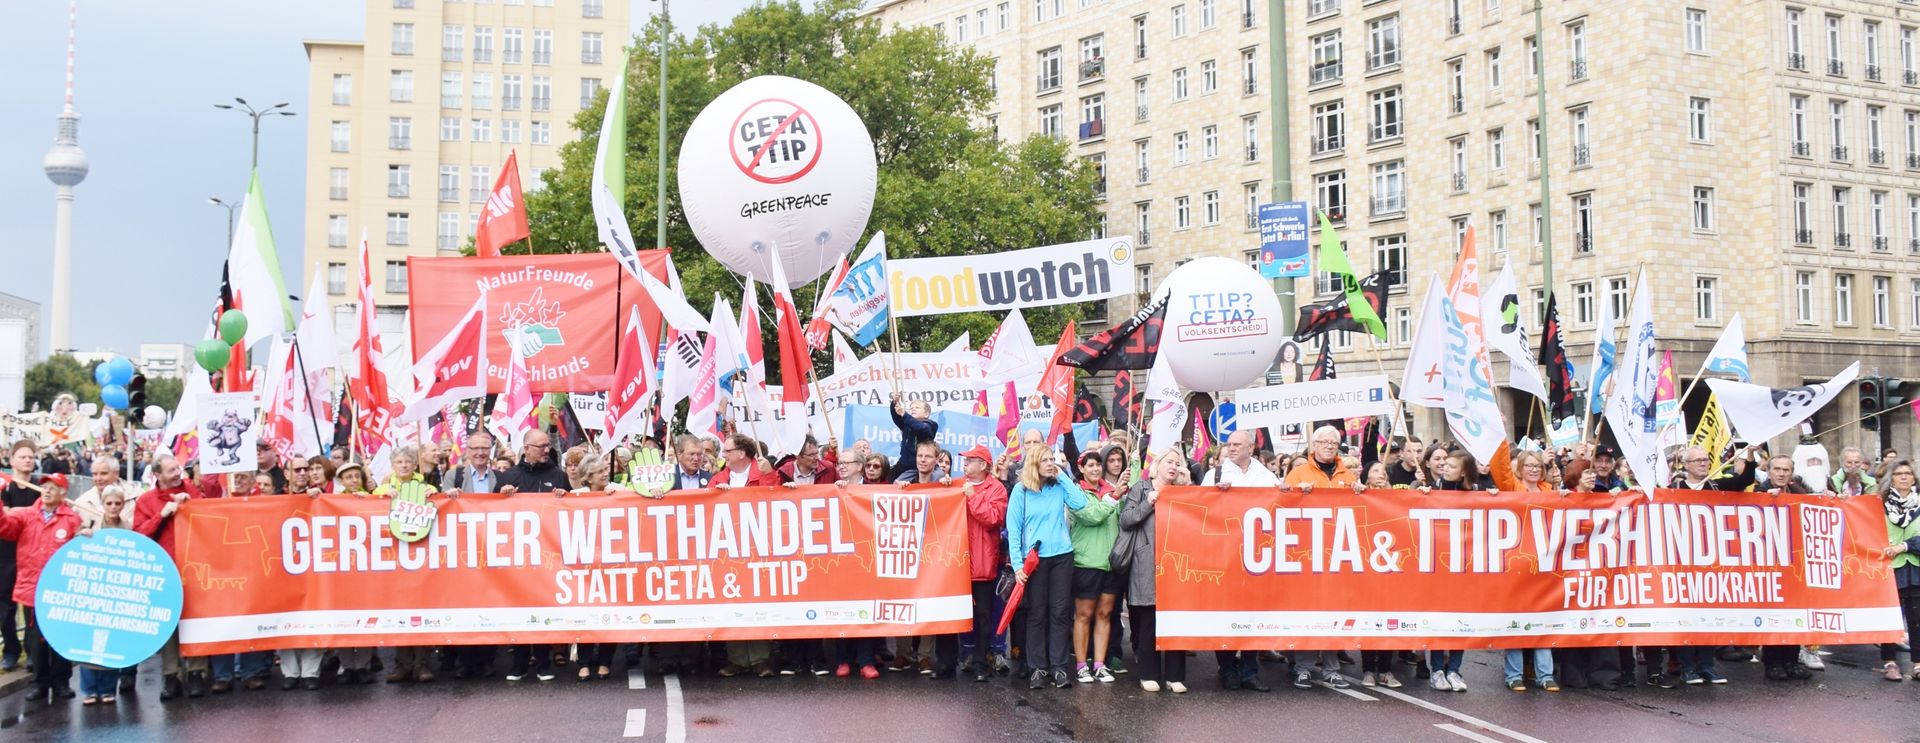 Rotes Transparent Gerechter Welthandel statt CETA und TTIP